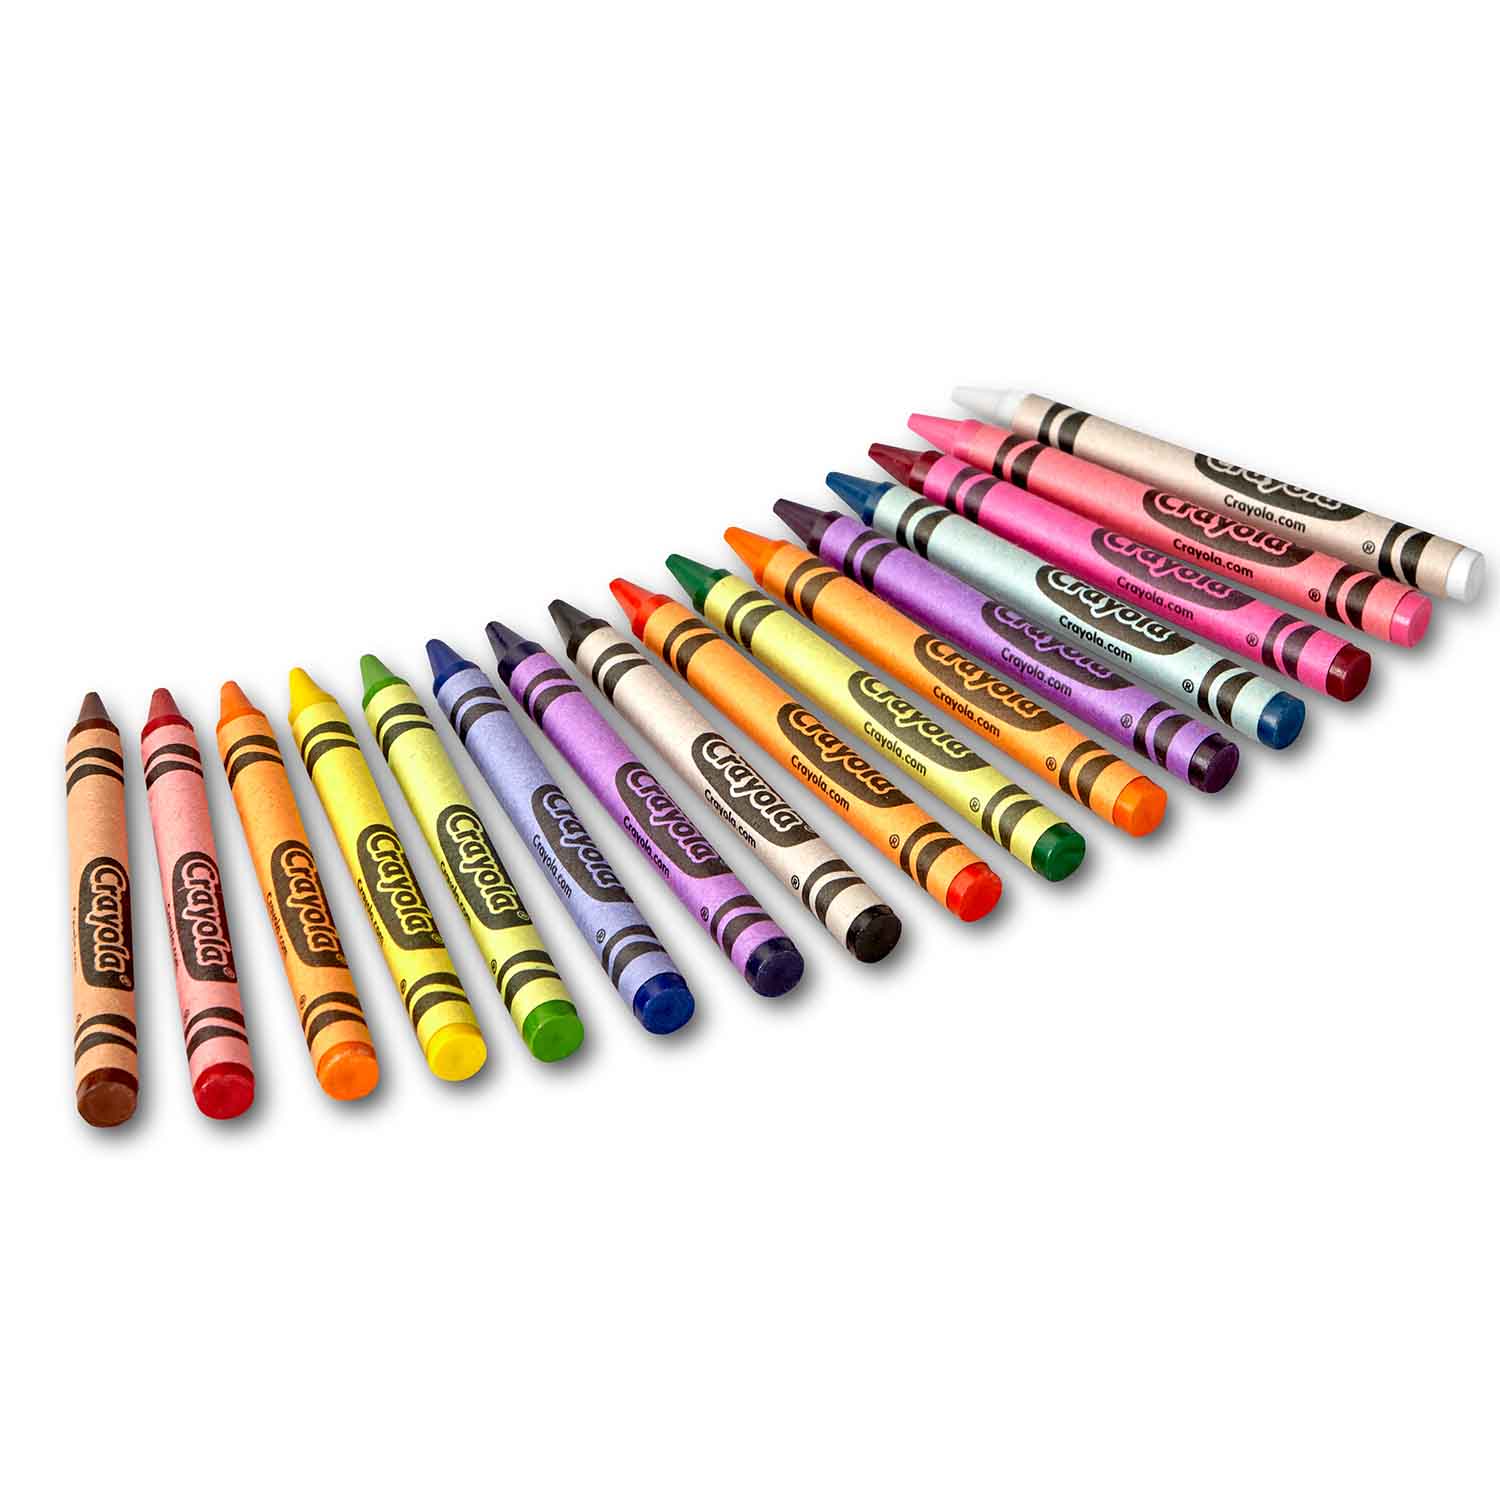 Crayola Regular Size Crayons 48 ct